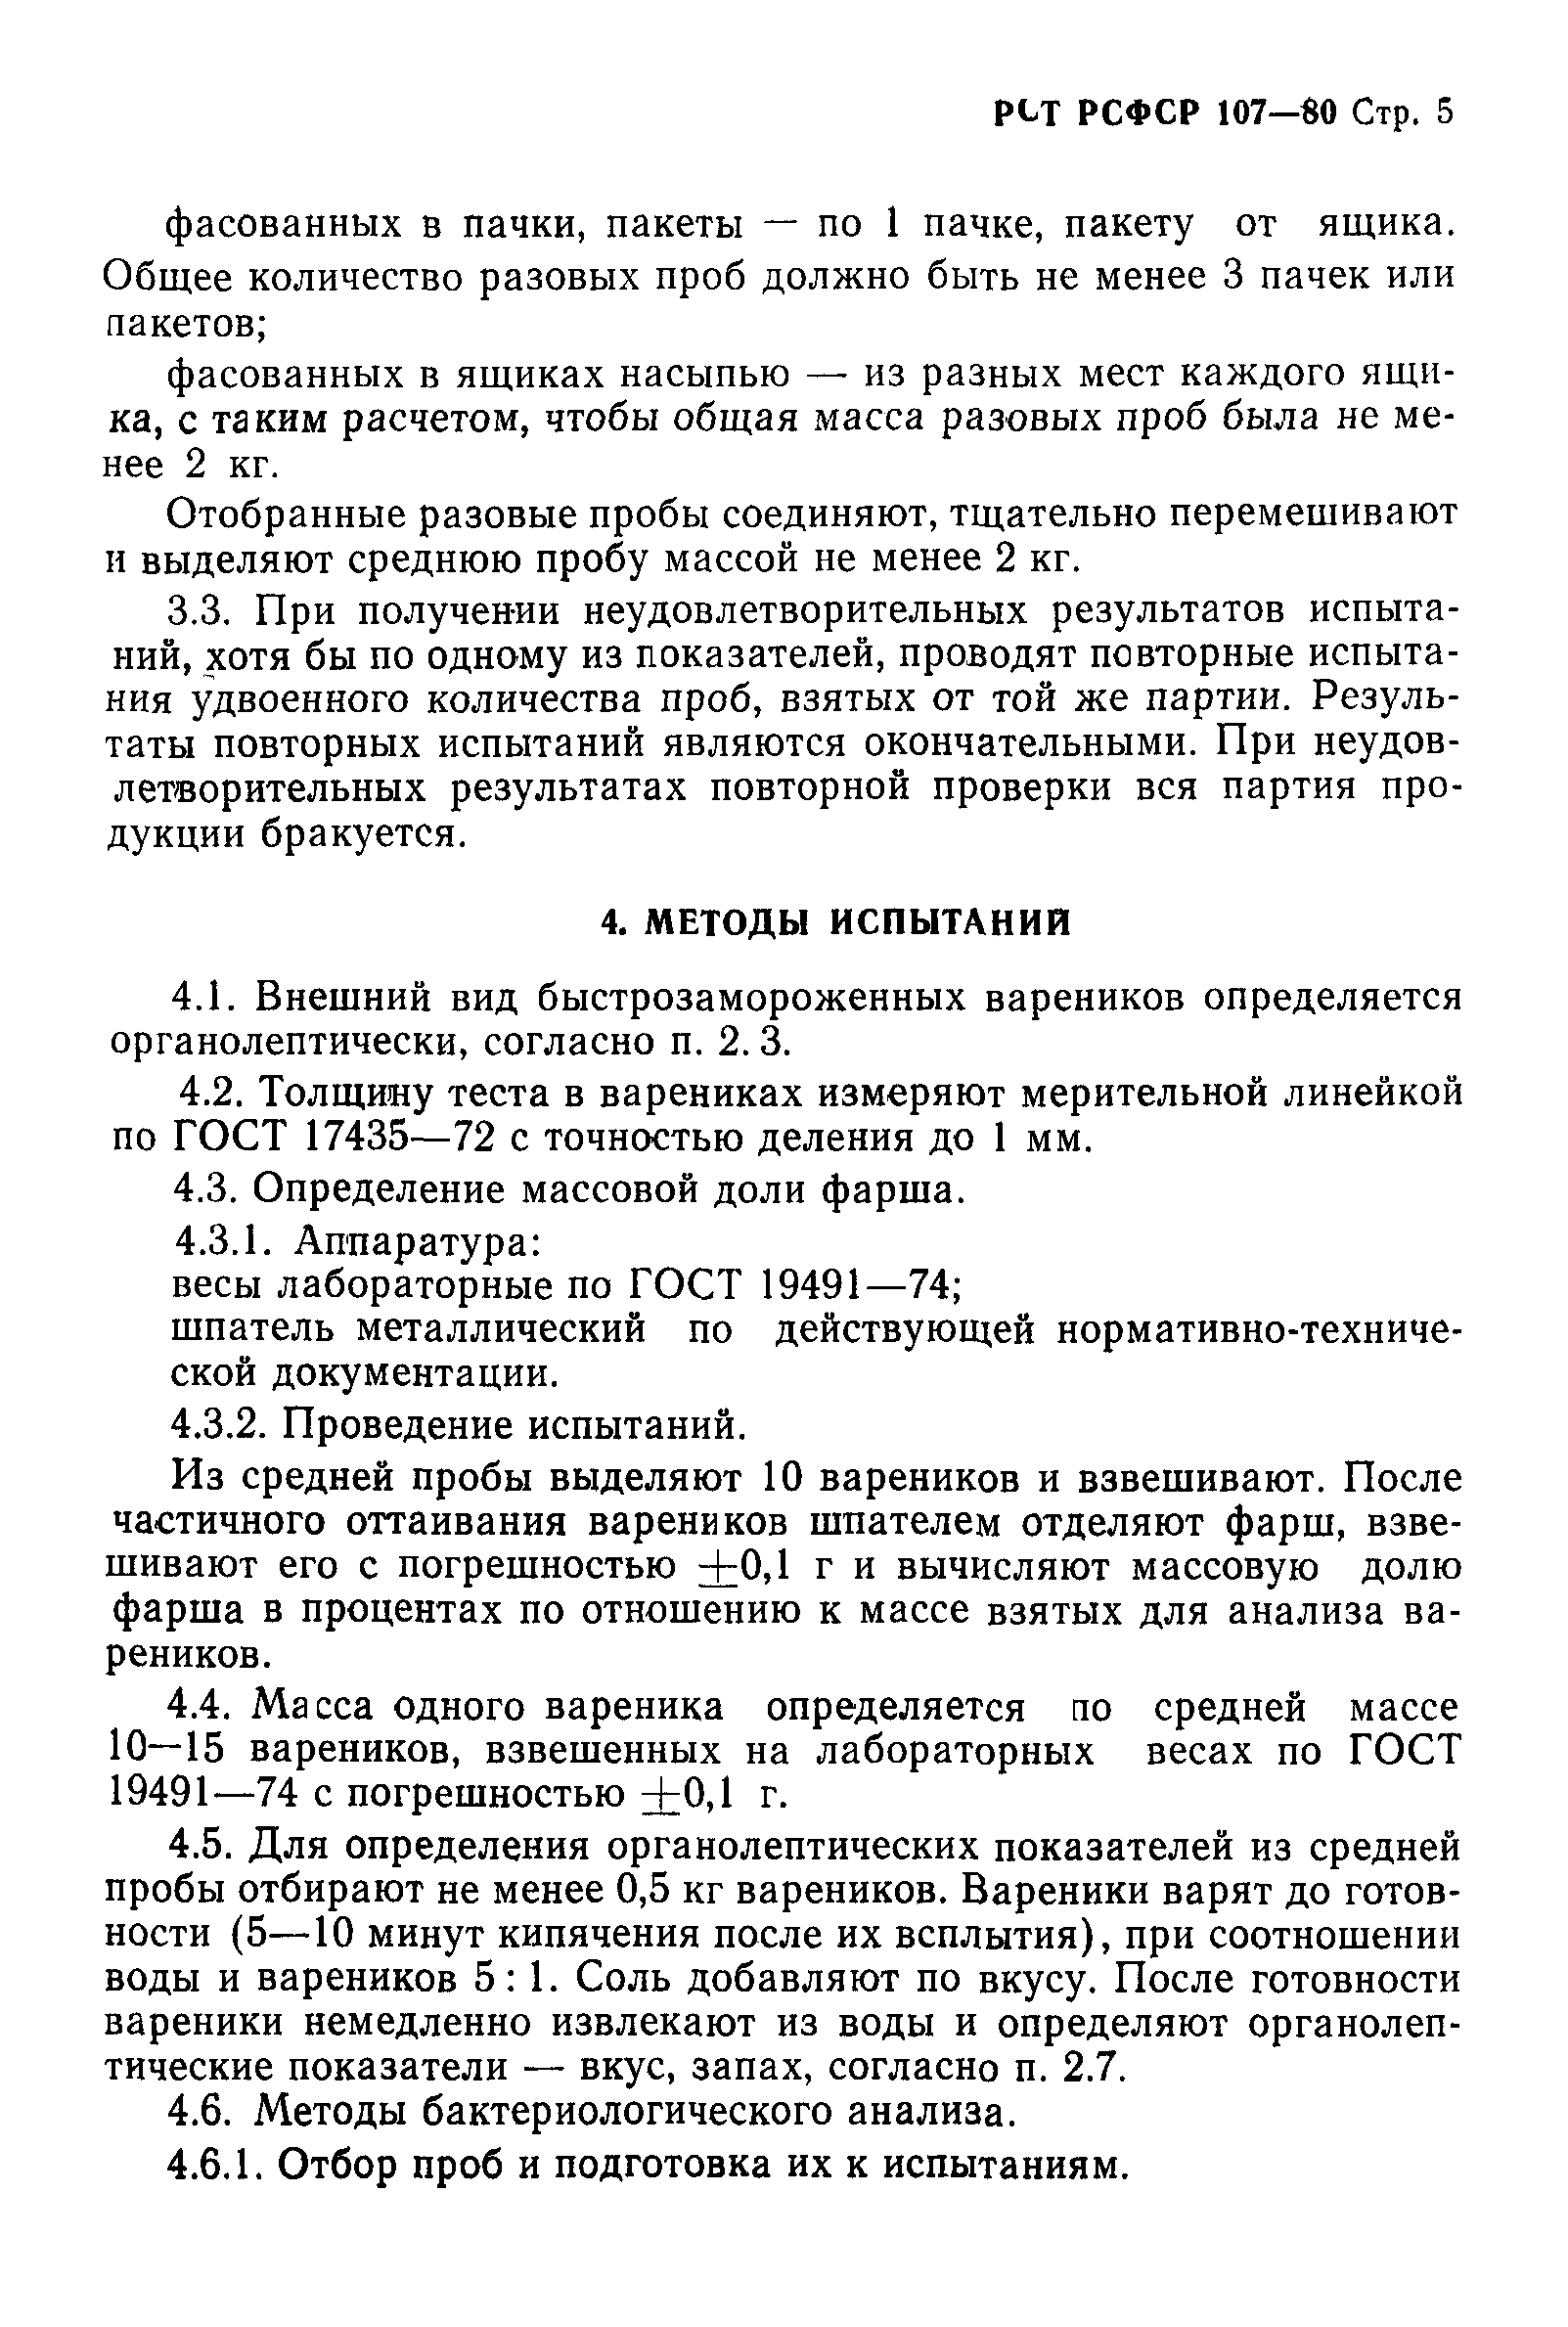 РСТ РСФСР 107-80